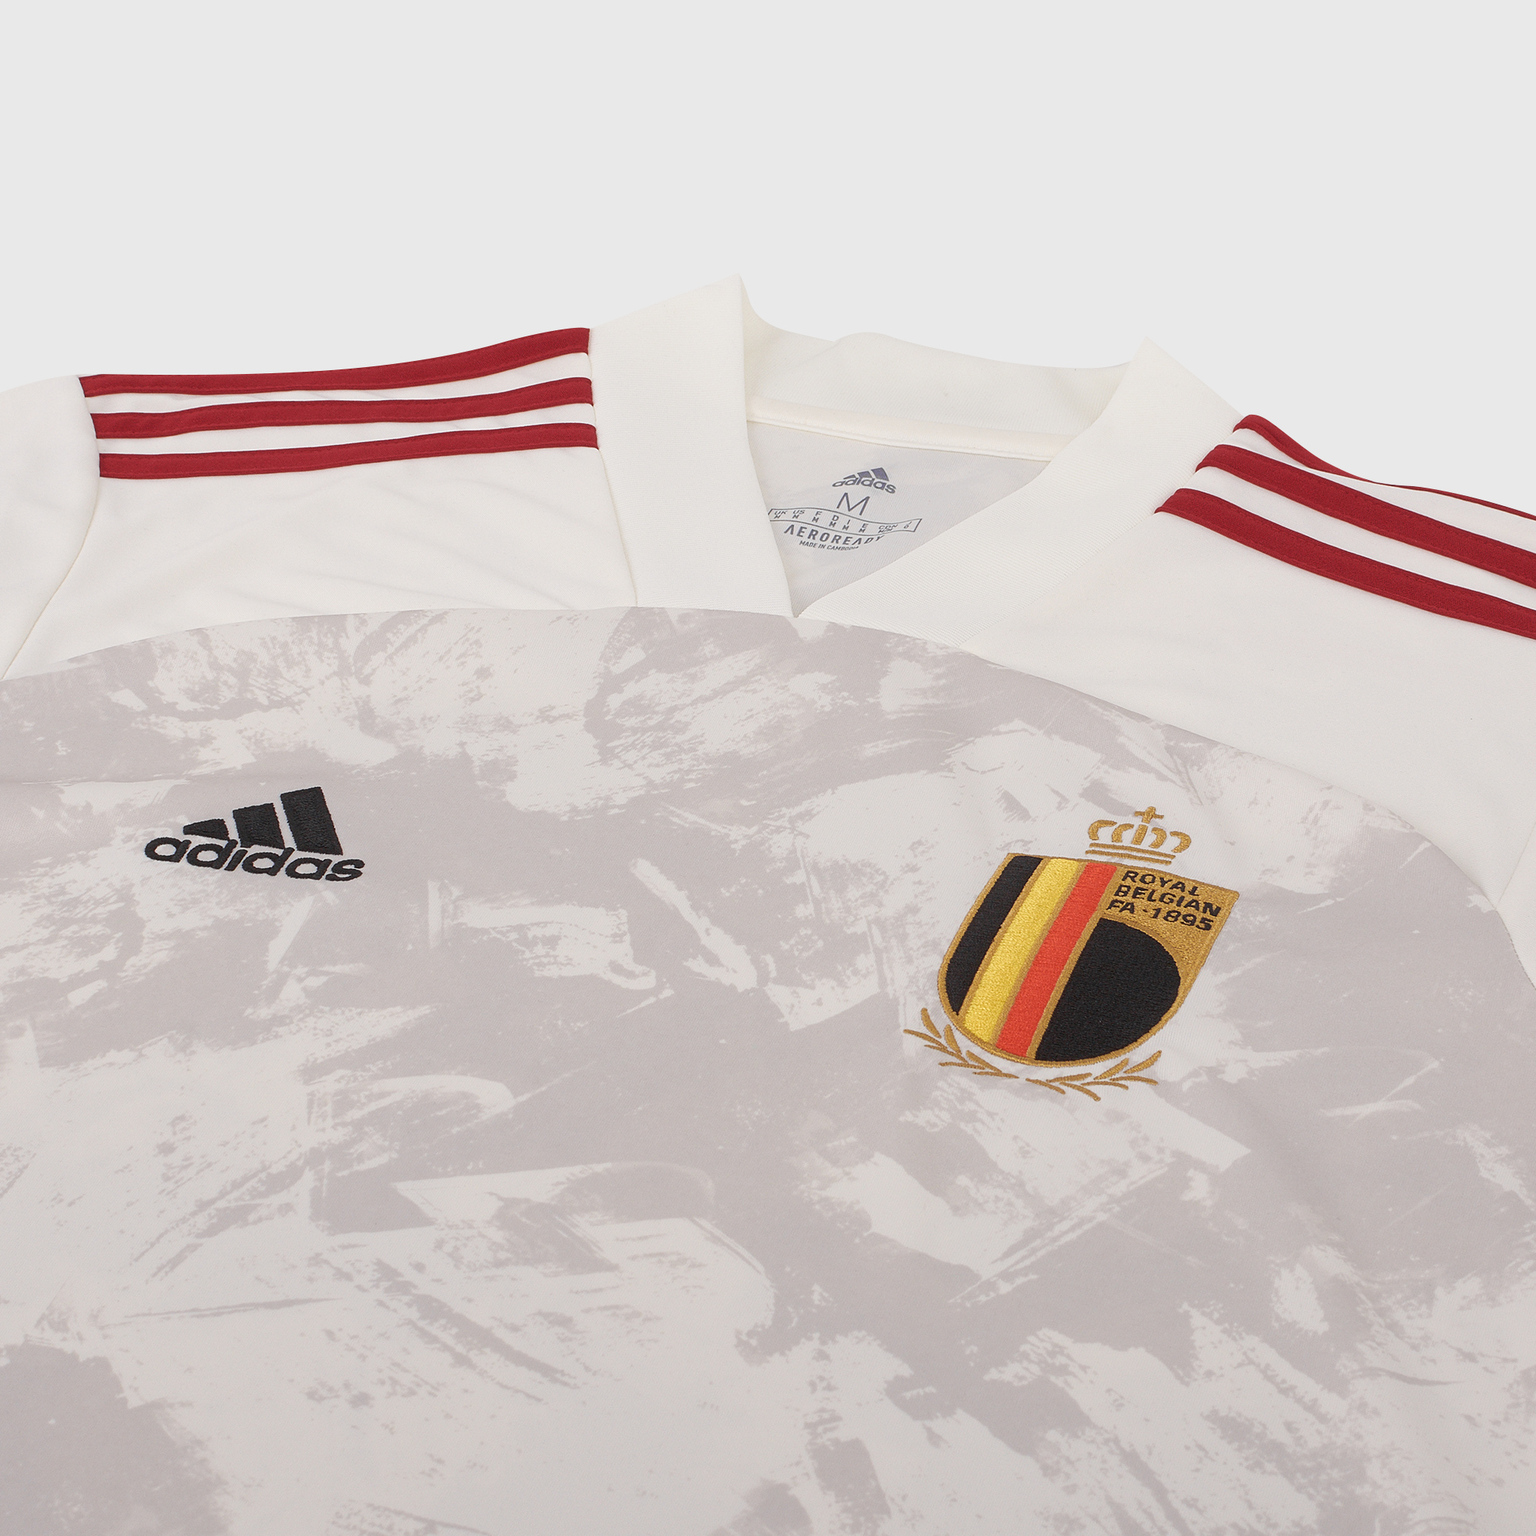 Футболка игровая выездная Adidas сборной Бельгии сезон 2020/21